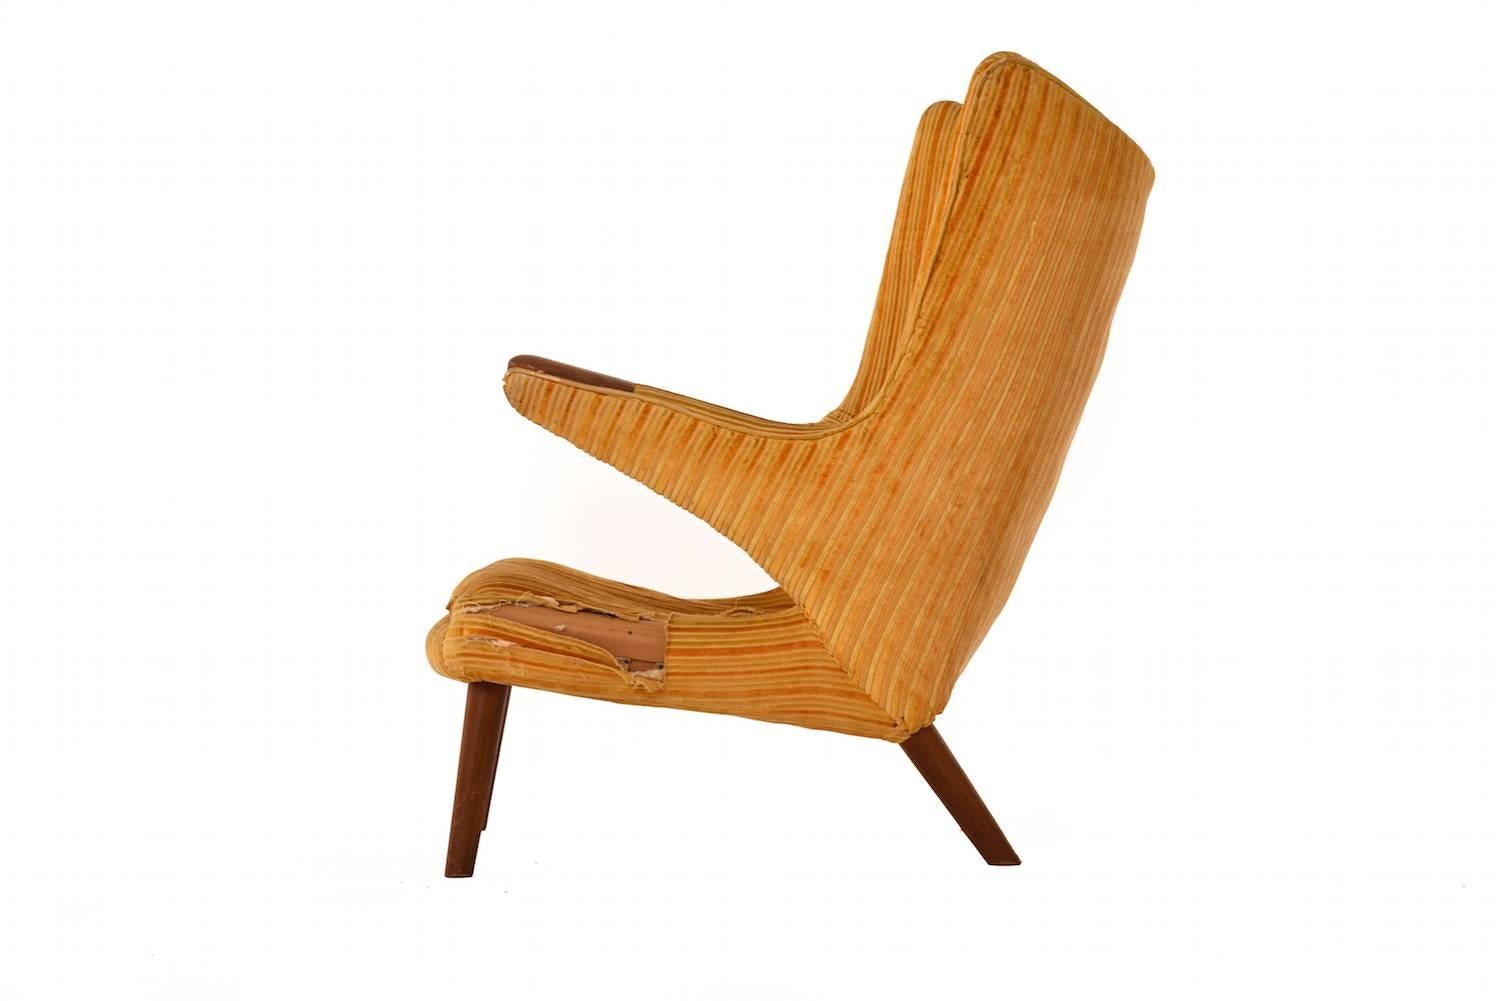 Hans J. Wegner's Bamsestol lounge chair affectionately coined the 